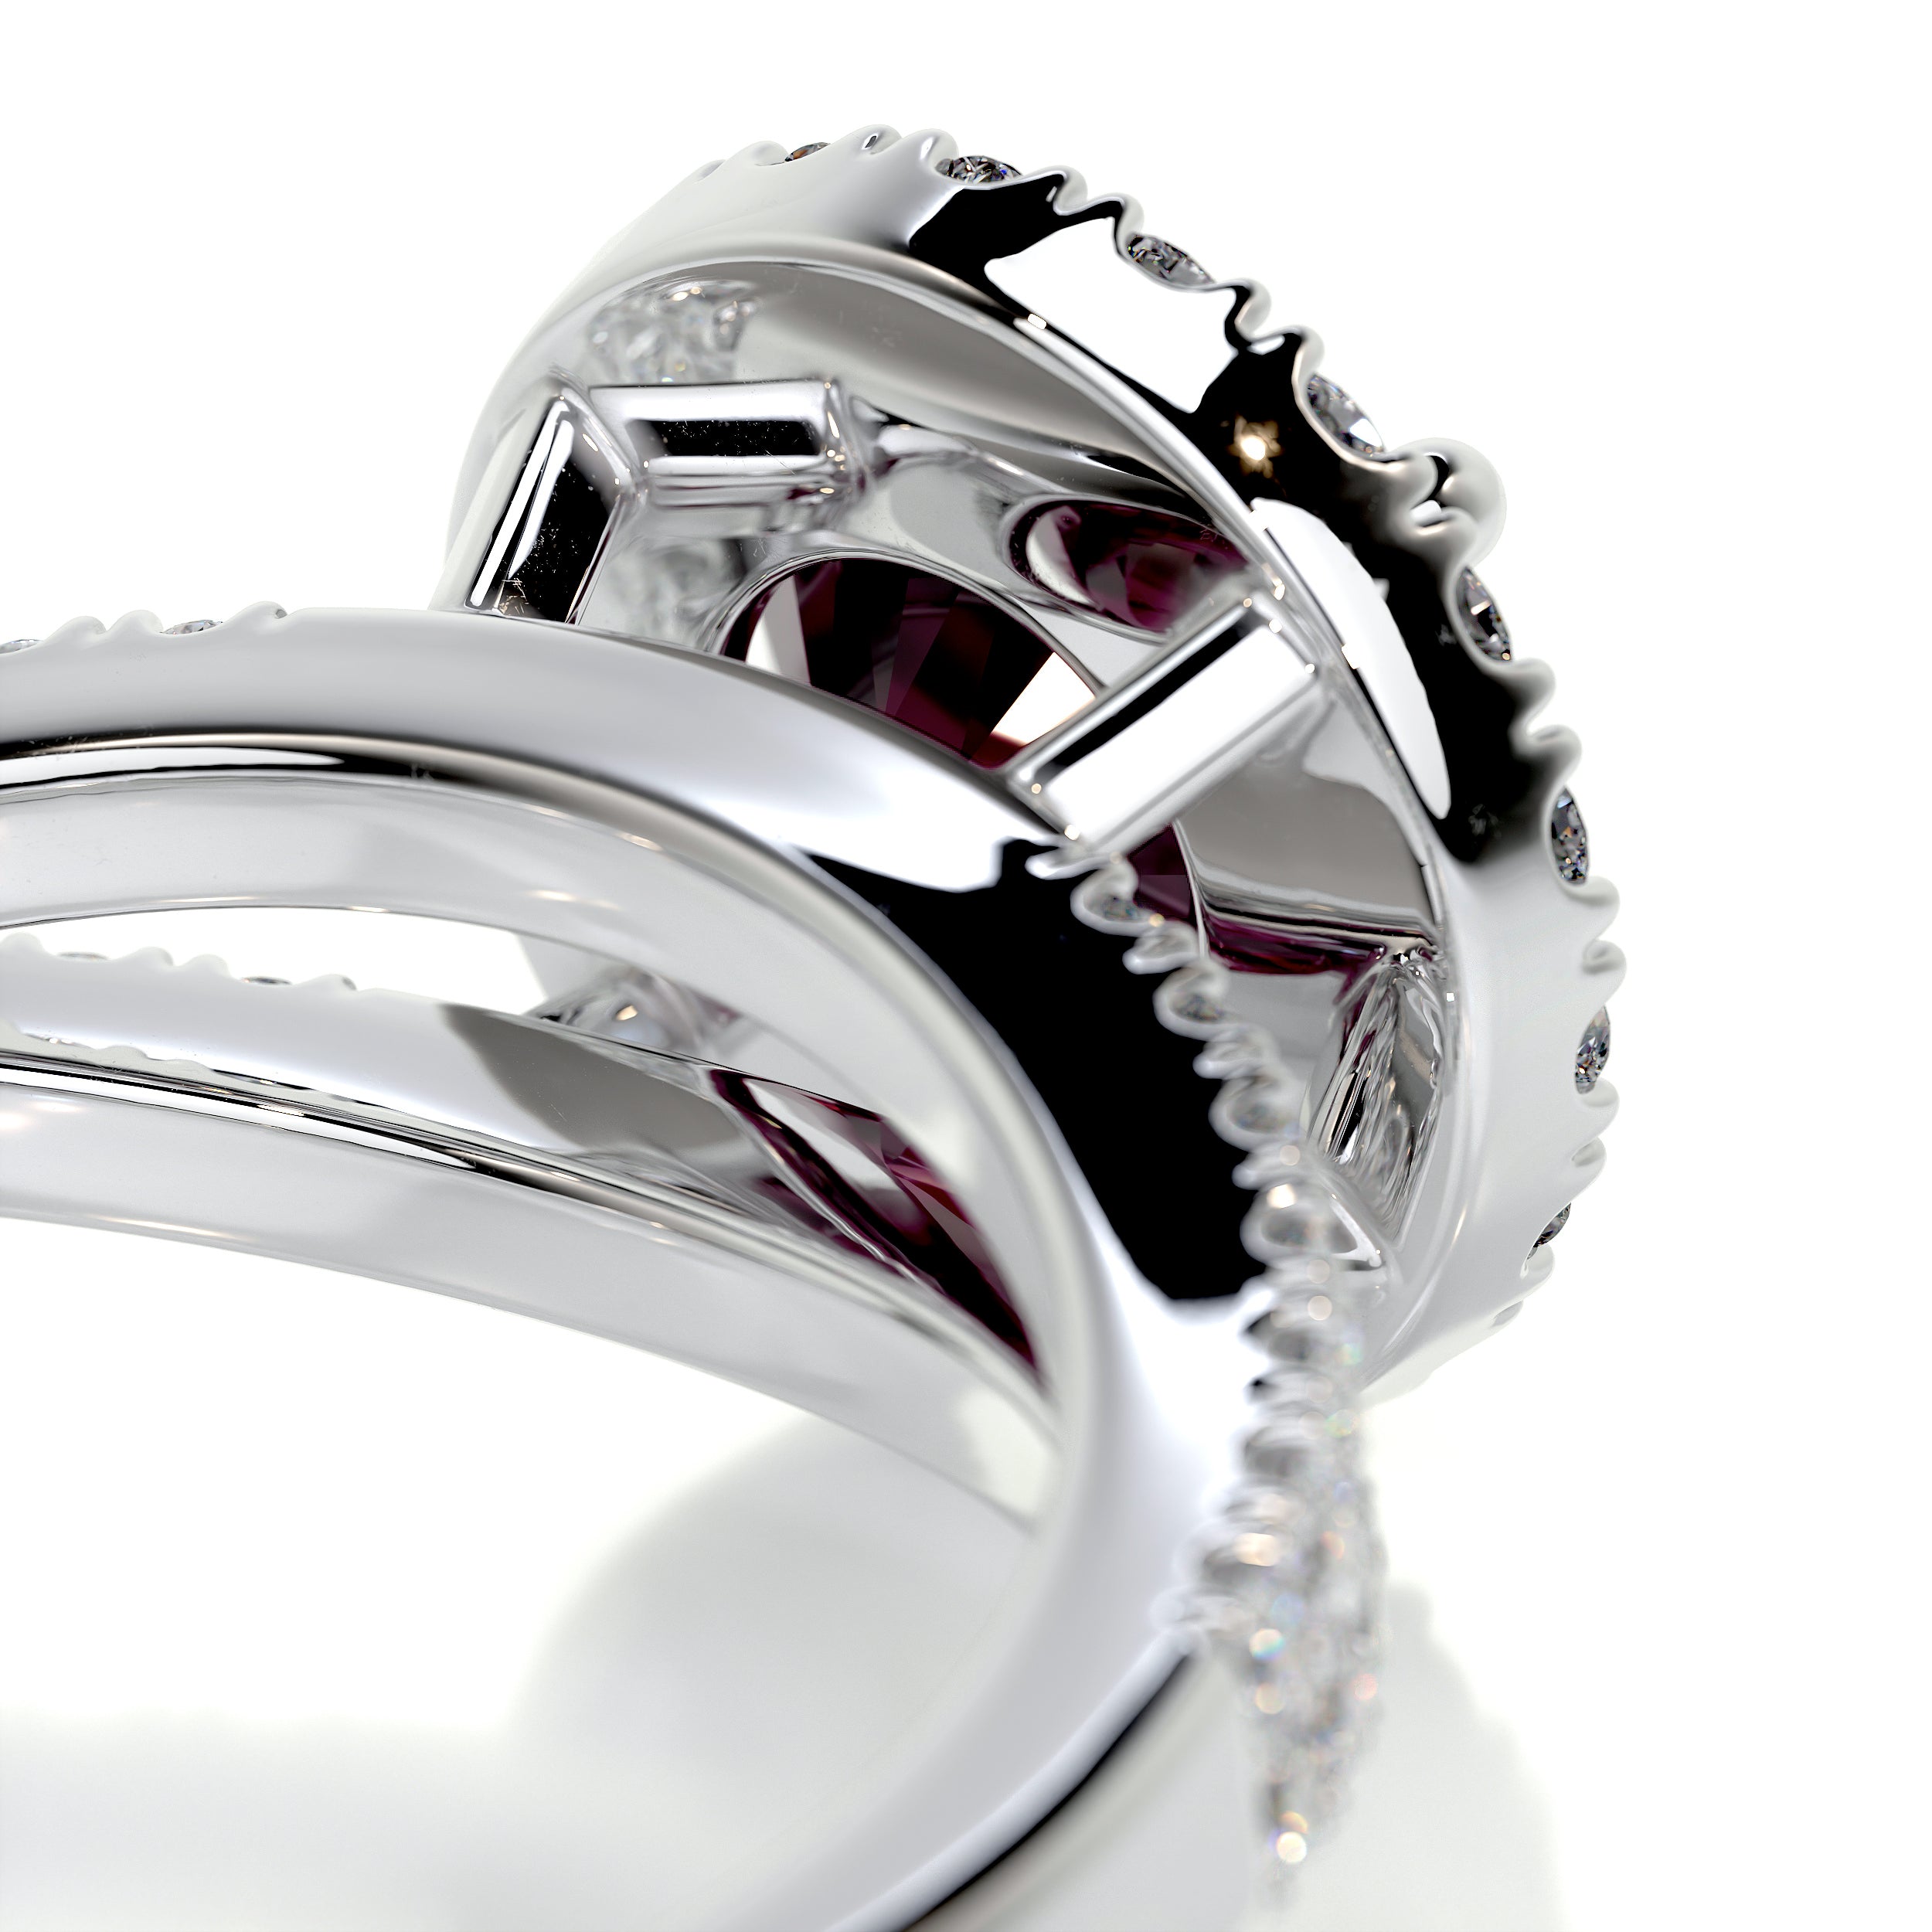 Hazel Gemstone & Diamonds Ring   (1.25 Carat) -18K White Gold